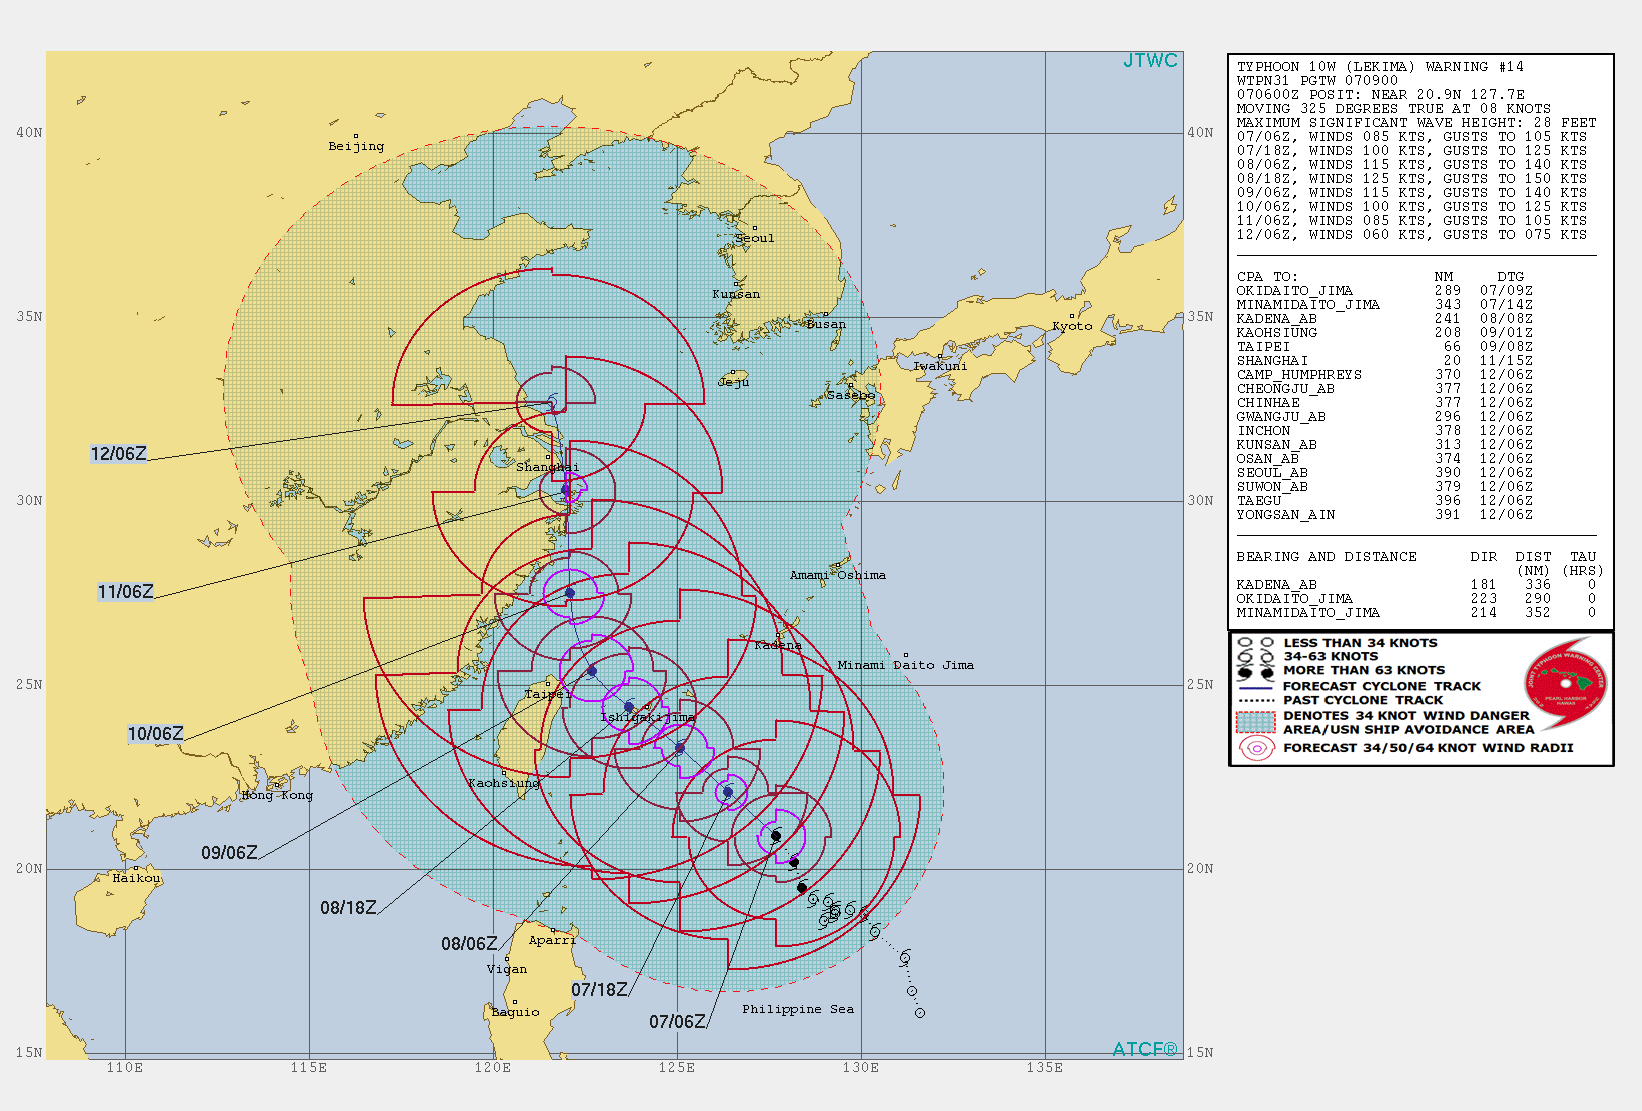 10W: WARNING 14/JTWC. PEAK INTENSITY OF 125KNOTS FORECAST IN 36H